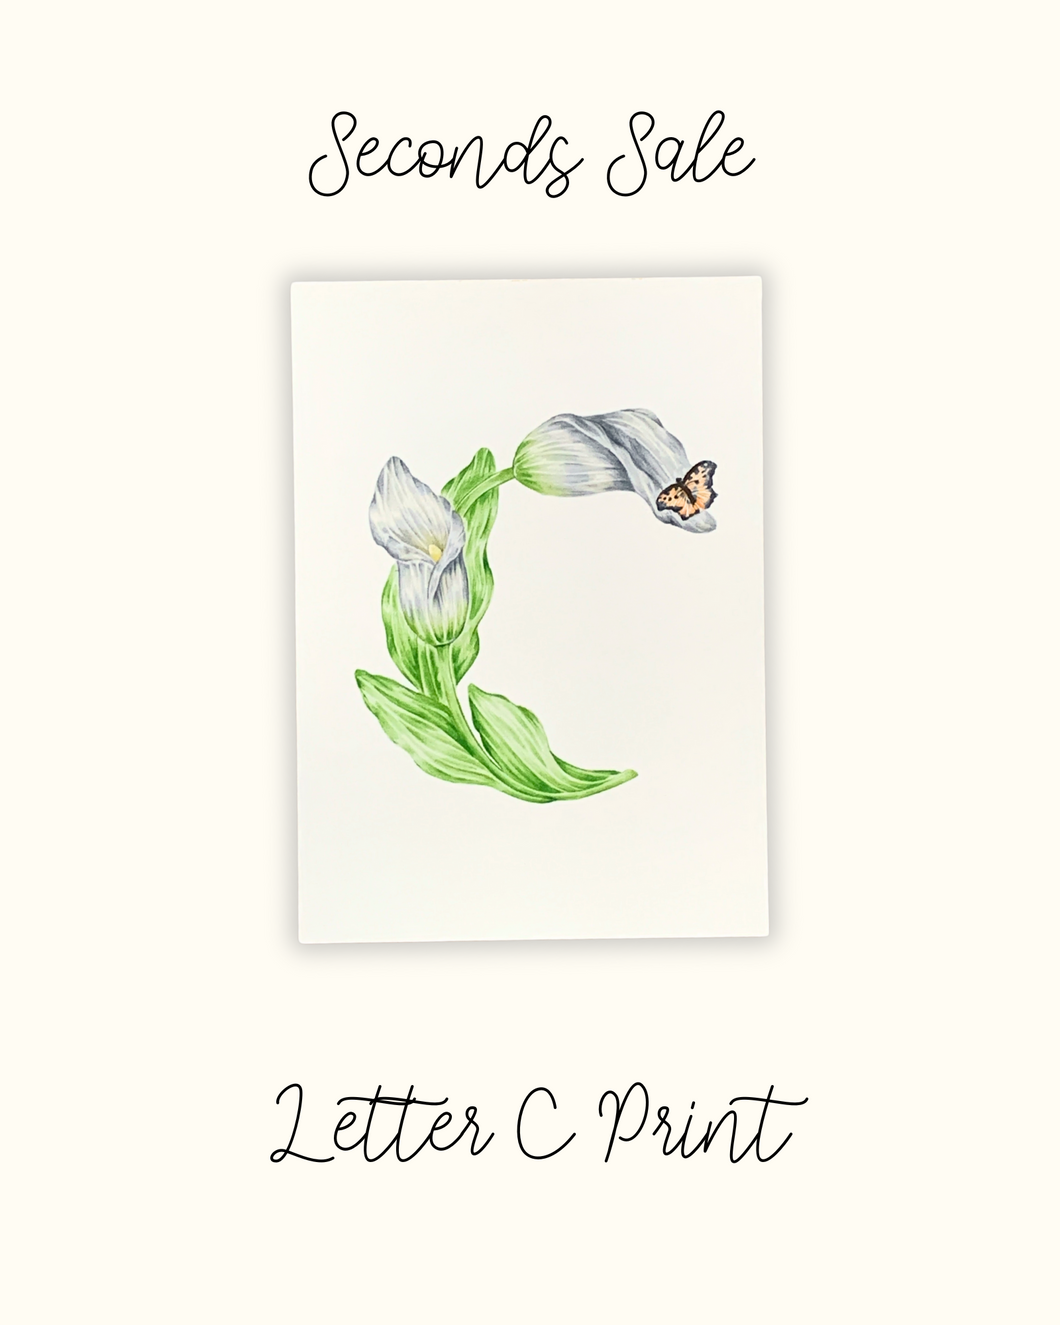 Letter C Print - Seconds Sale